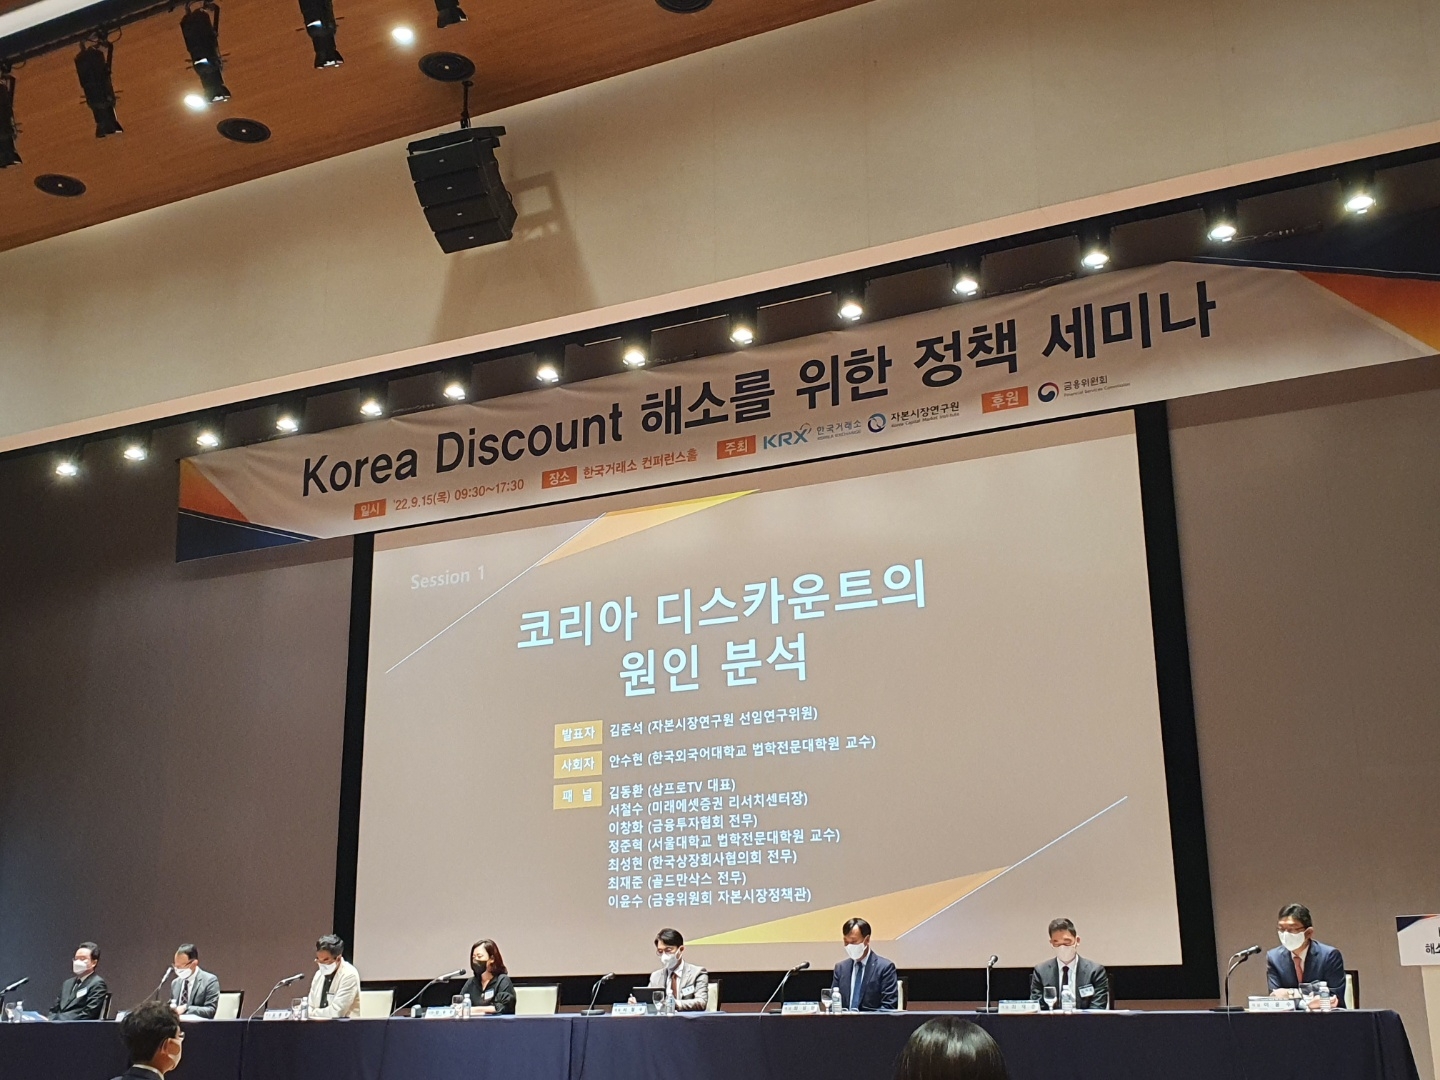 한국거래소와 자본시장연구원은 15일 여의도 한국거래소에서 '코리아 디스카운트 해소를 위한 정책 세미나'를 개최했다. 패널토론 모습. / 사진= 한국금융신문(2022.09.15)